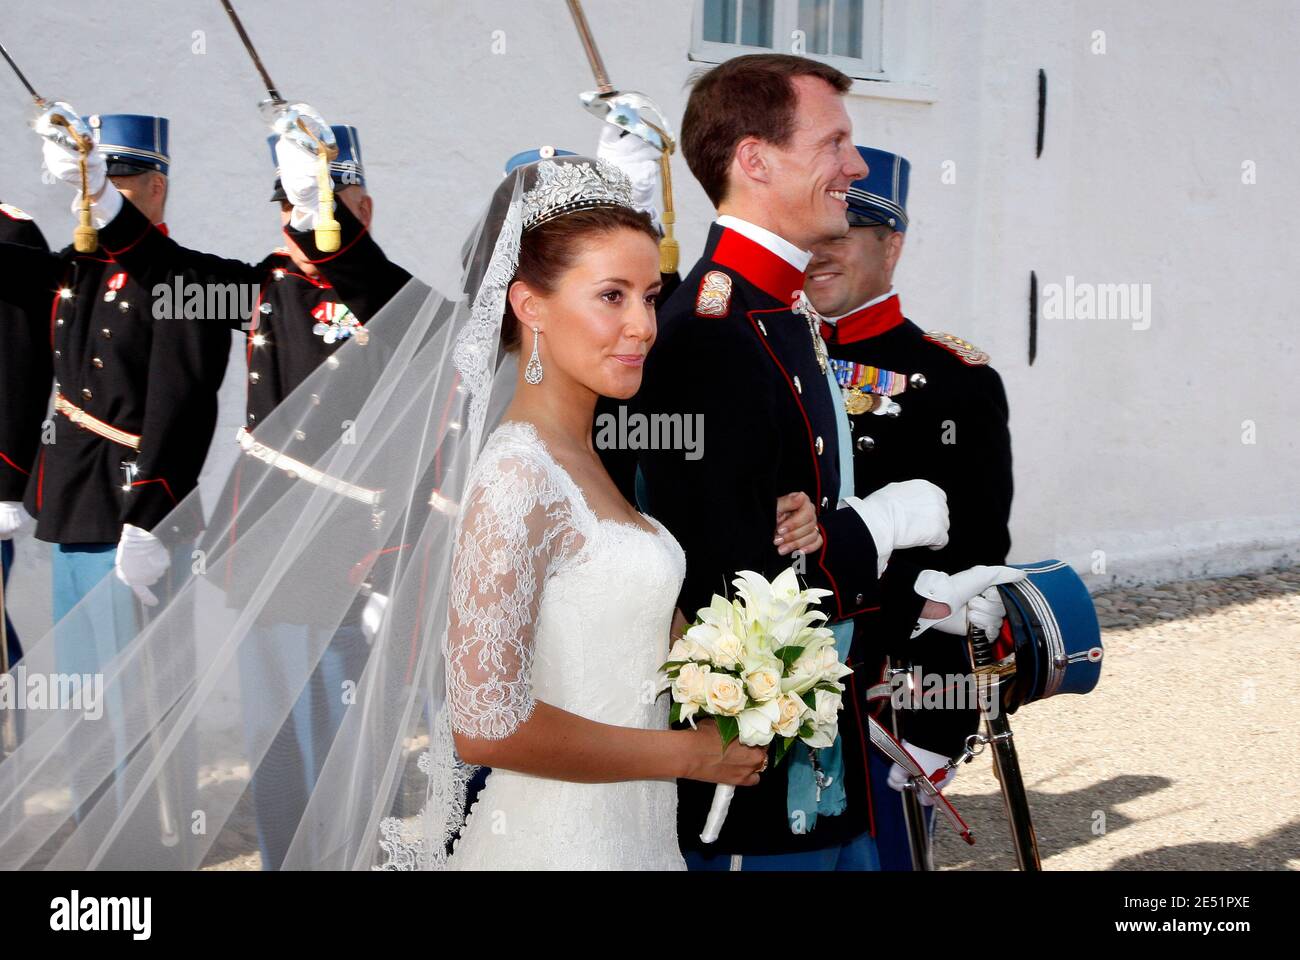 El Príncipe Joachim de Dinamarca y su Alteza Real María Cavallier boda en la iglesia de Mogeltonder, en el sur de Jutlandia, Dinamarca el 24 de mayo de 2008. Esta es una nueva boda para el príncipe Joachim (hijo menor de la reina Margrethe II y el príncipe Henri de Montpezat), 39, que se casó con Alexandra Manley el 18 de noviembre de 1995 y se divorció el 8 de abril de 2005. La princesa Marie Cavallier, de 32 años, es ciudadana francesa y pertenece a la Iglesia Católica Romana. Foto de Patrick Bernard/ABACAPRESS.COM Foto de stock